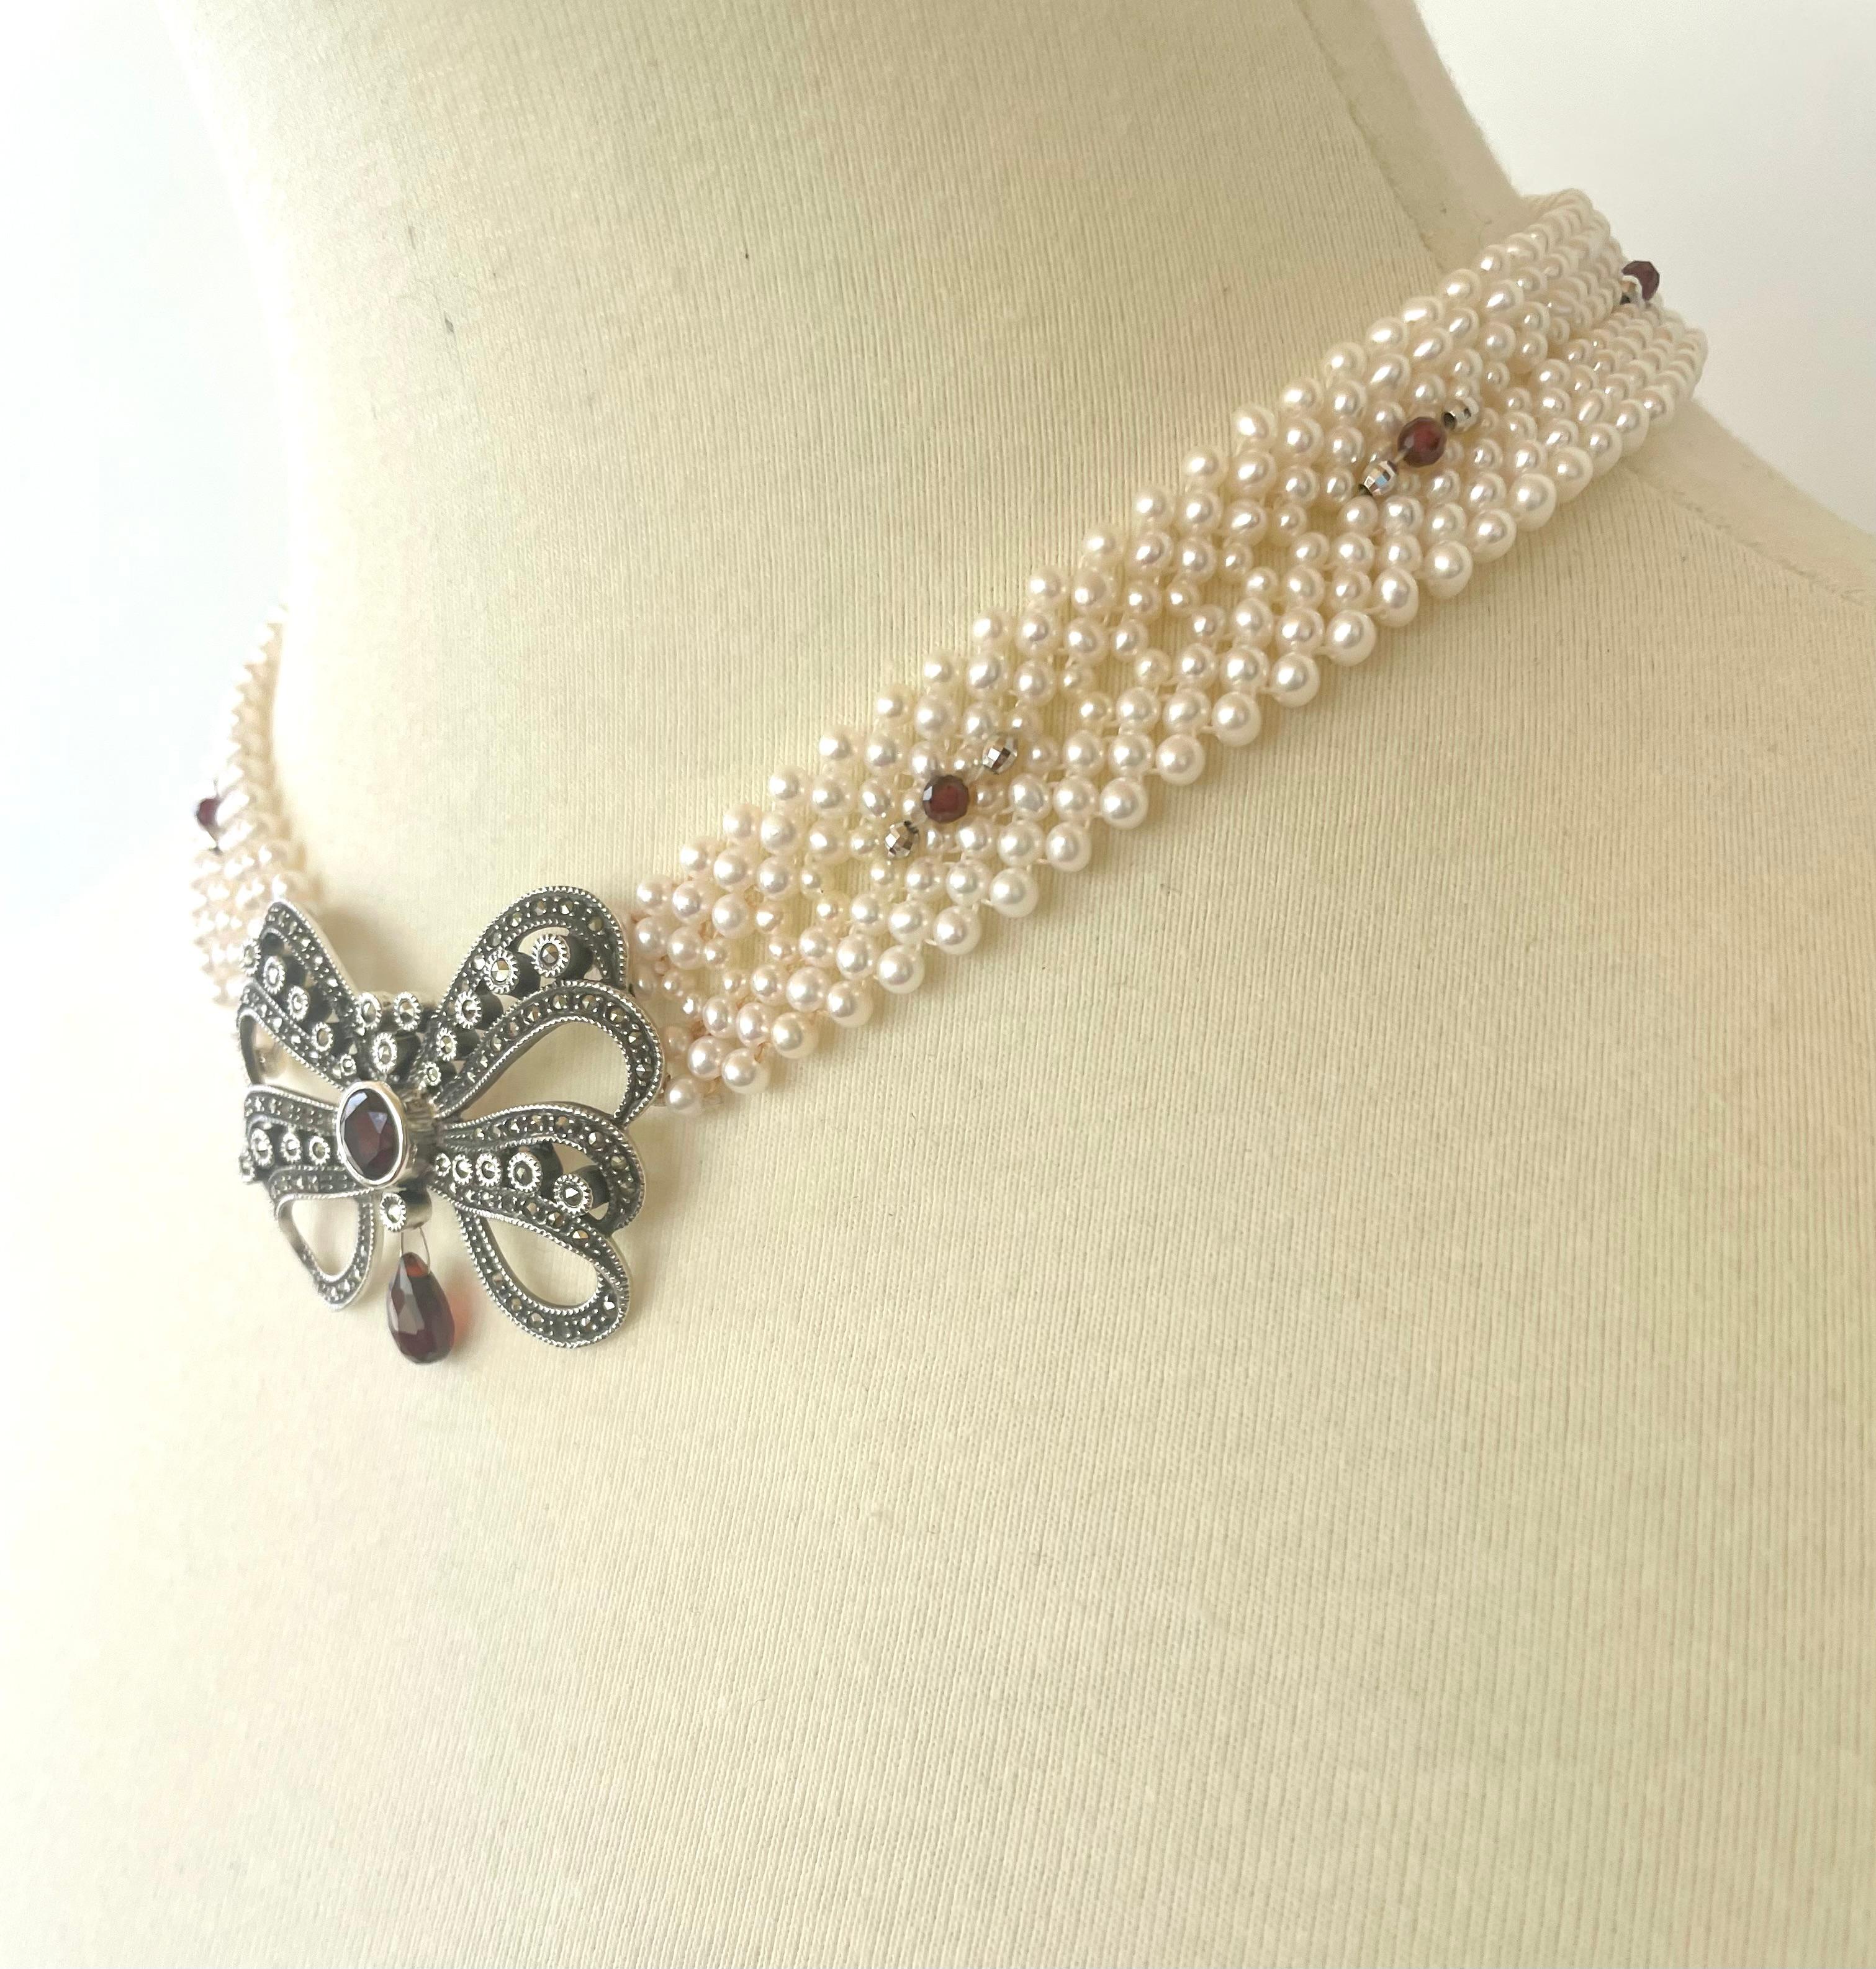 Diese wunderschön handgefertigte, geflochtene weiße Perlenkette ist mit einer Vintage-Silberbrosche mit Markasitbeschlägen versehen. Diese Halskette aus 2 mm großen Perlen besteht aus facettierten Silber- und Granatperlen, die die Brosche perfekt